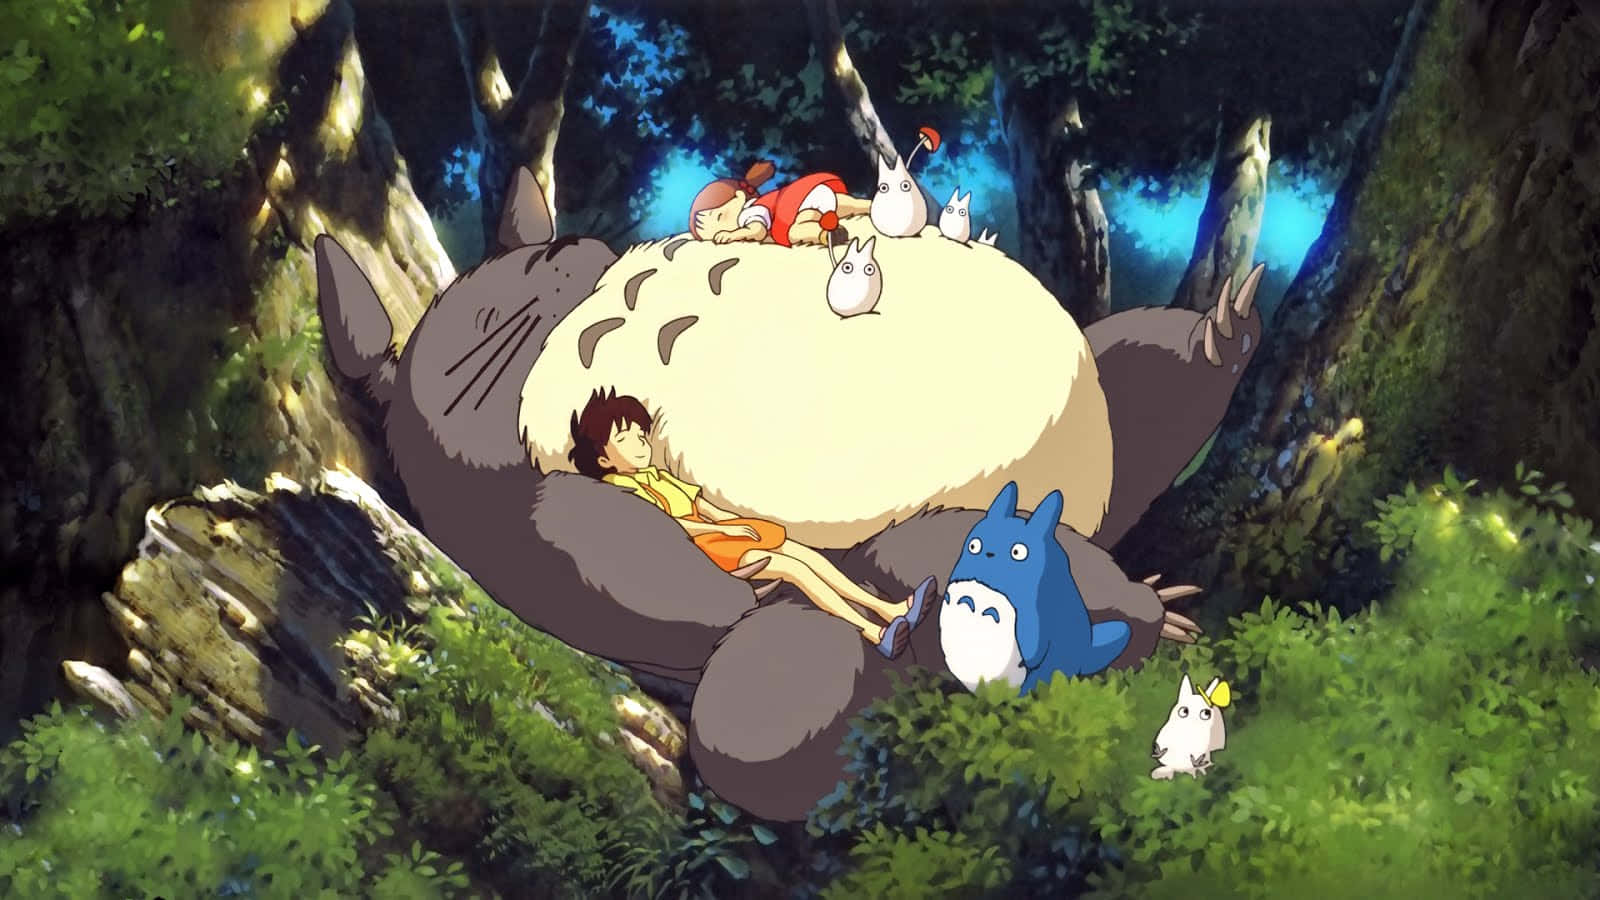 Ungrupo De Personas Sentadas Encima De Un Totoro Gigante.